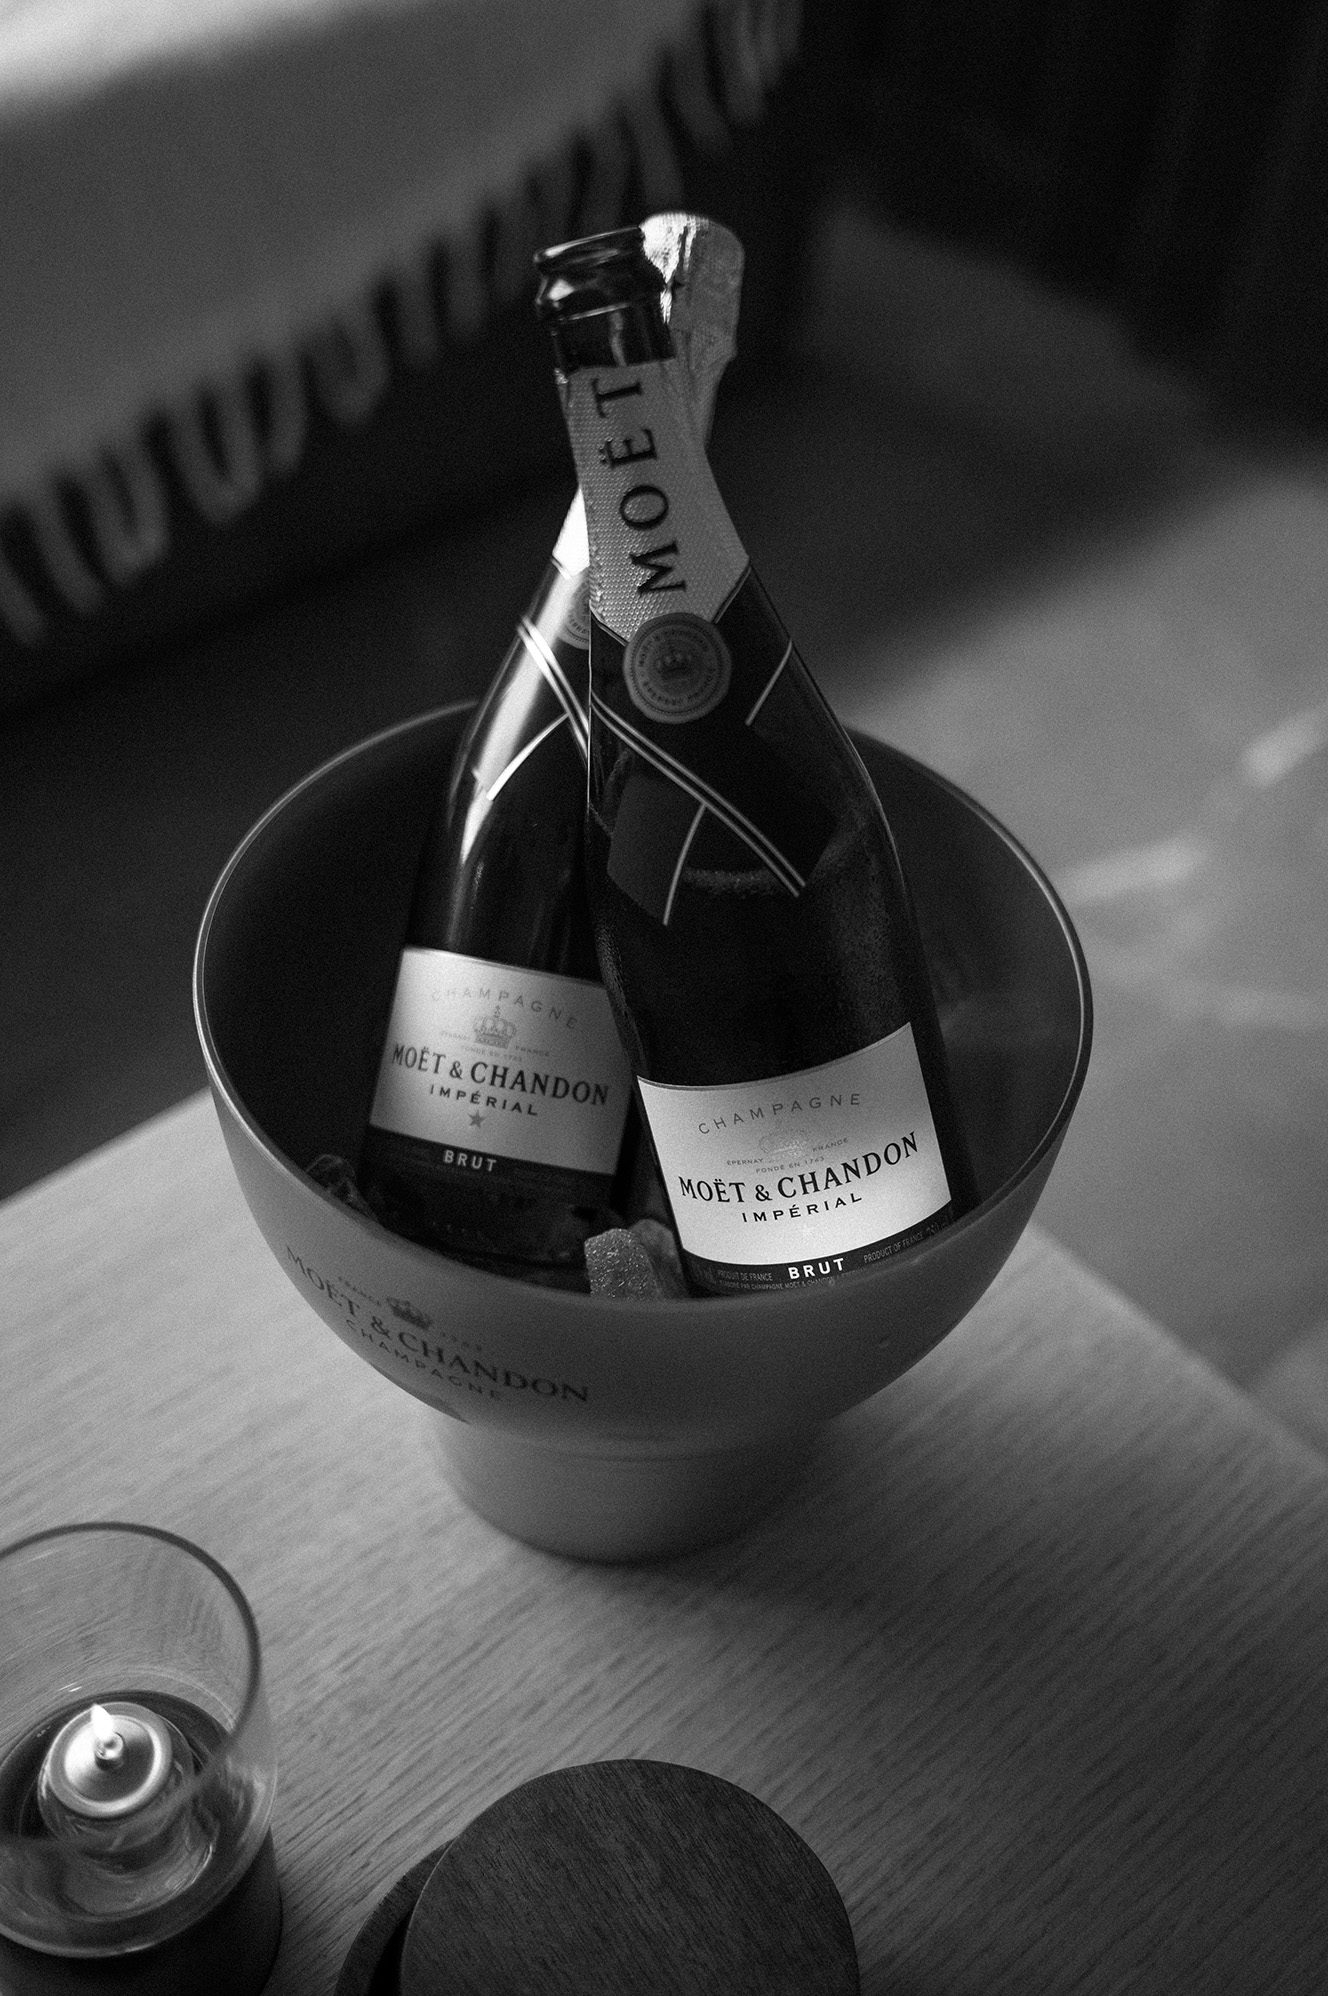 Moët & Chandon champagne